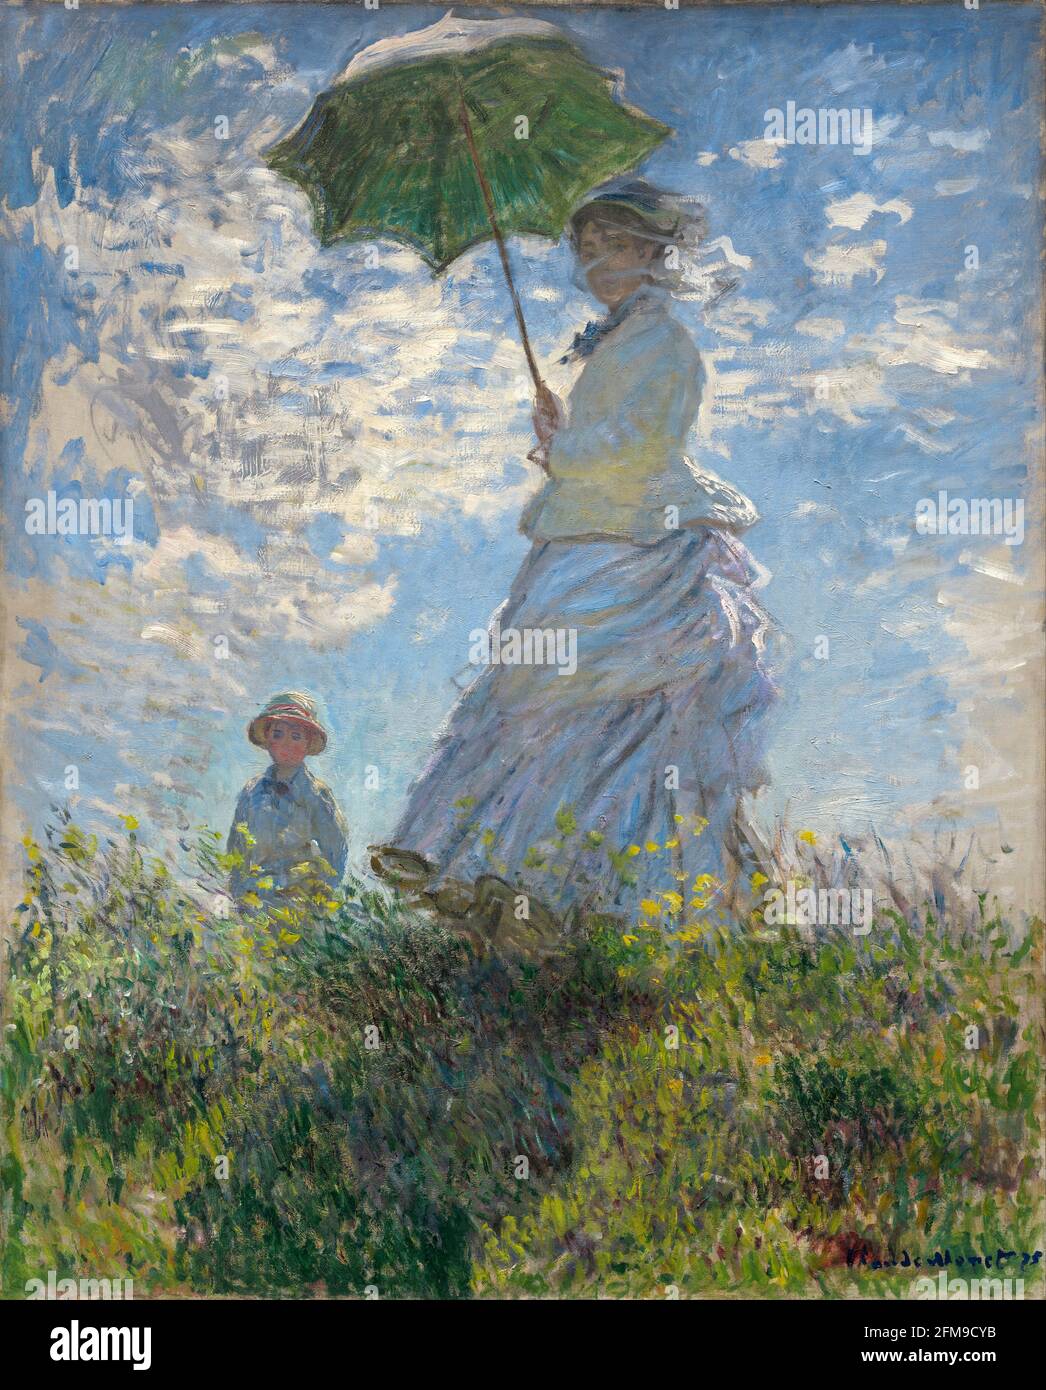 Claude Monet, femme avec un parasol, 1875, huile sur toile, National Gallery of Art, Washington DC, Etats-Unis. Banque D'Images